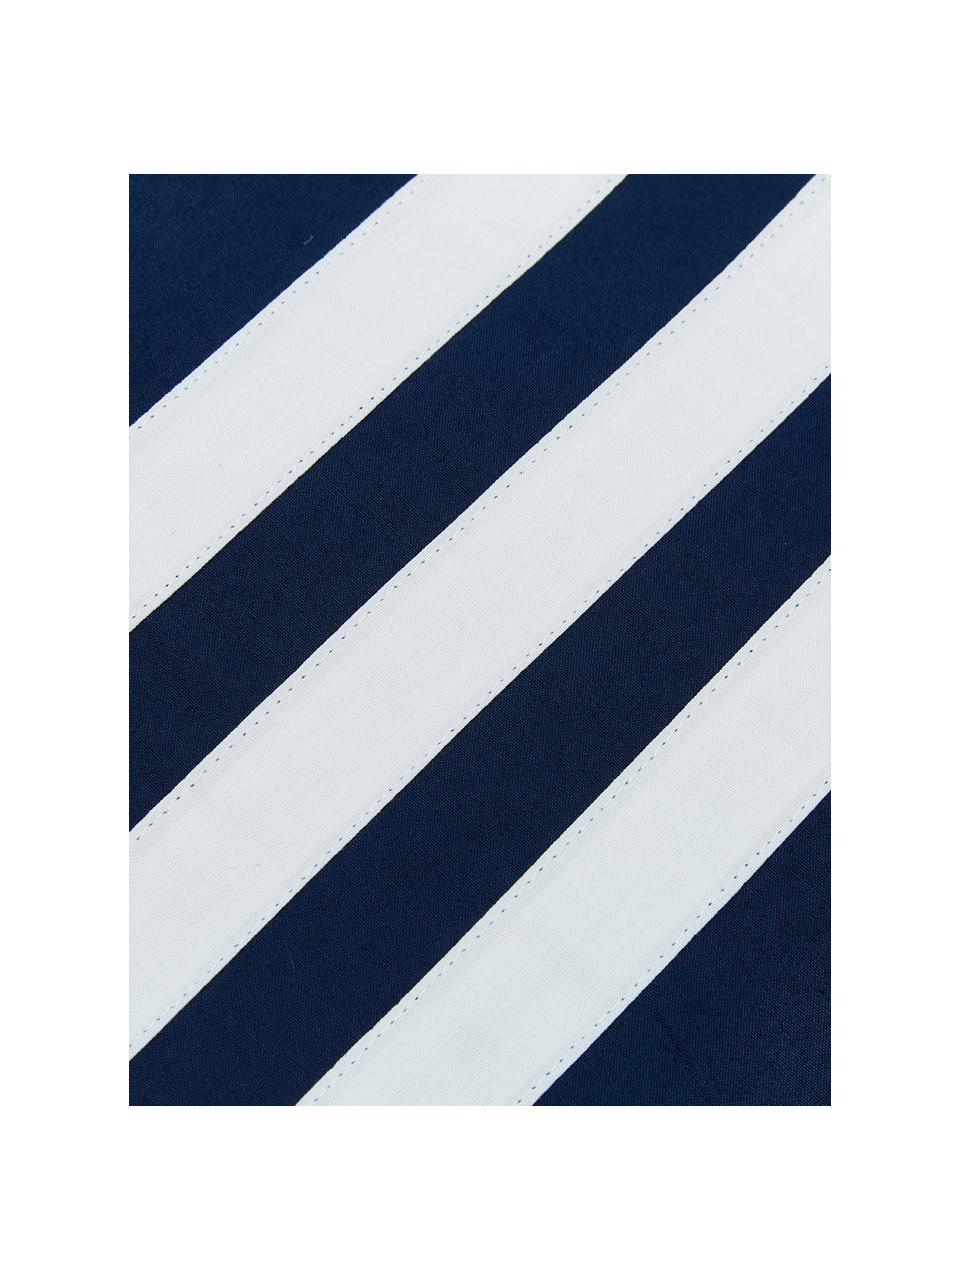 Completo copripiumino in cotone Hilton, Cotone, Blu,bianco, 200 x 255 cm + 2 federe + 1 lenzuolo con angoli